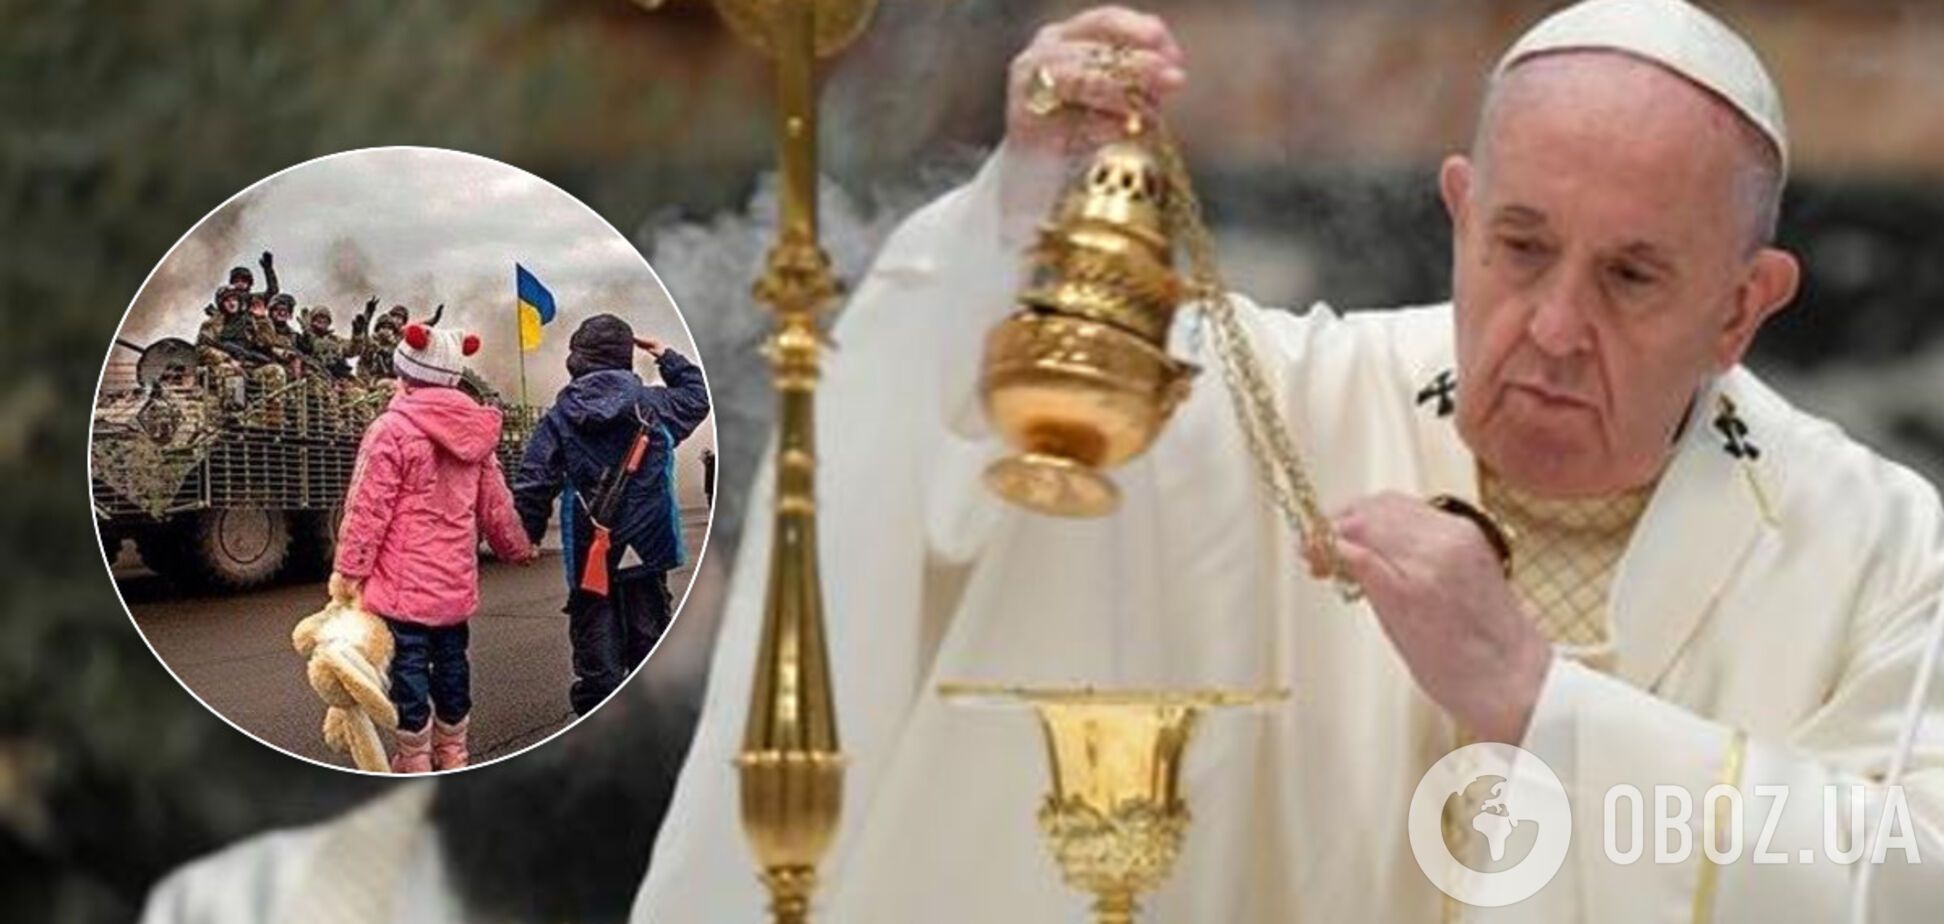 'Пусть прекратятся страдания Донбасса!' Папа Римский вспомнил Украину в пасхальном послании. Видео